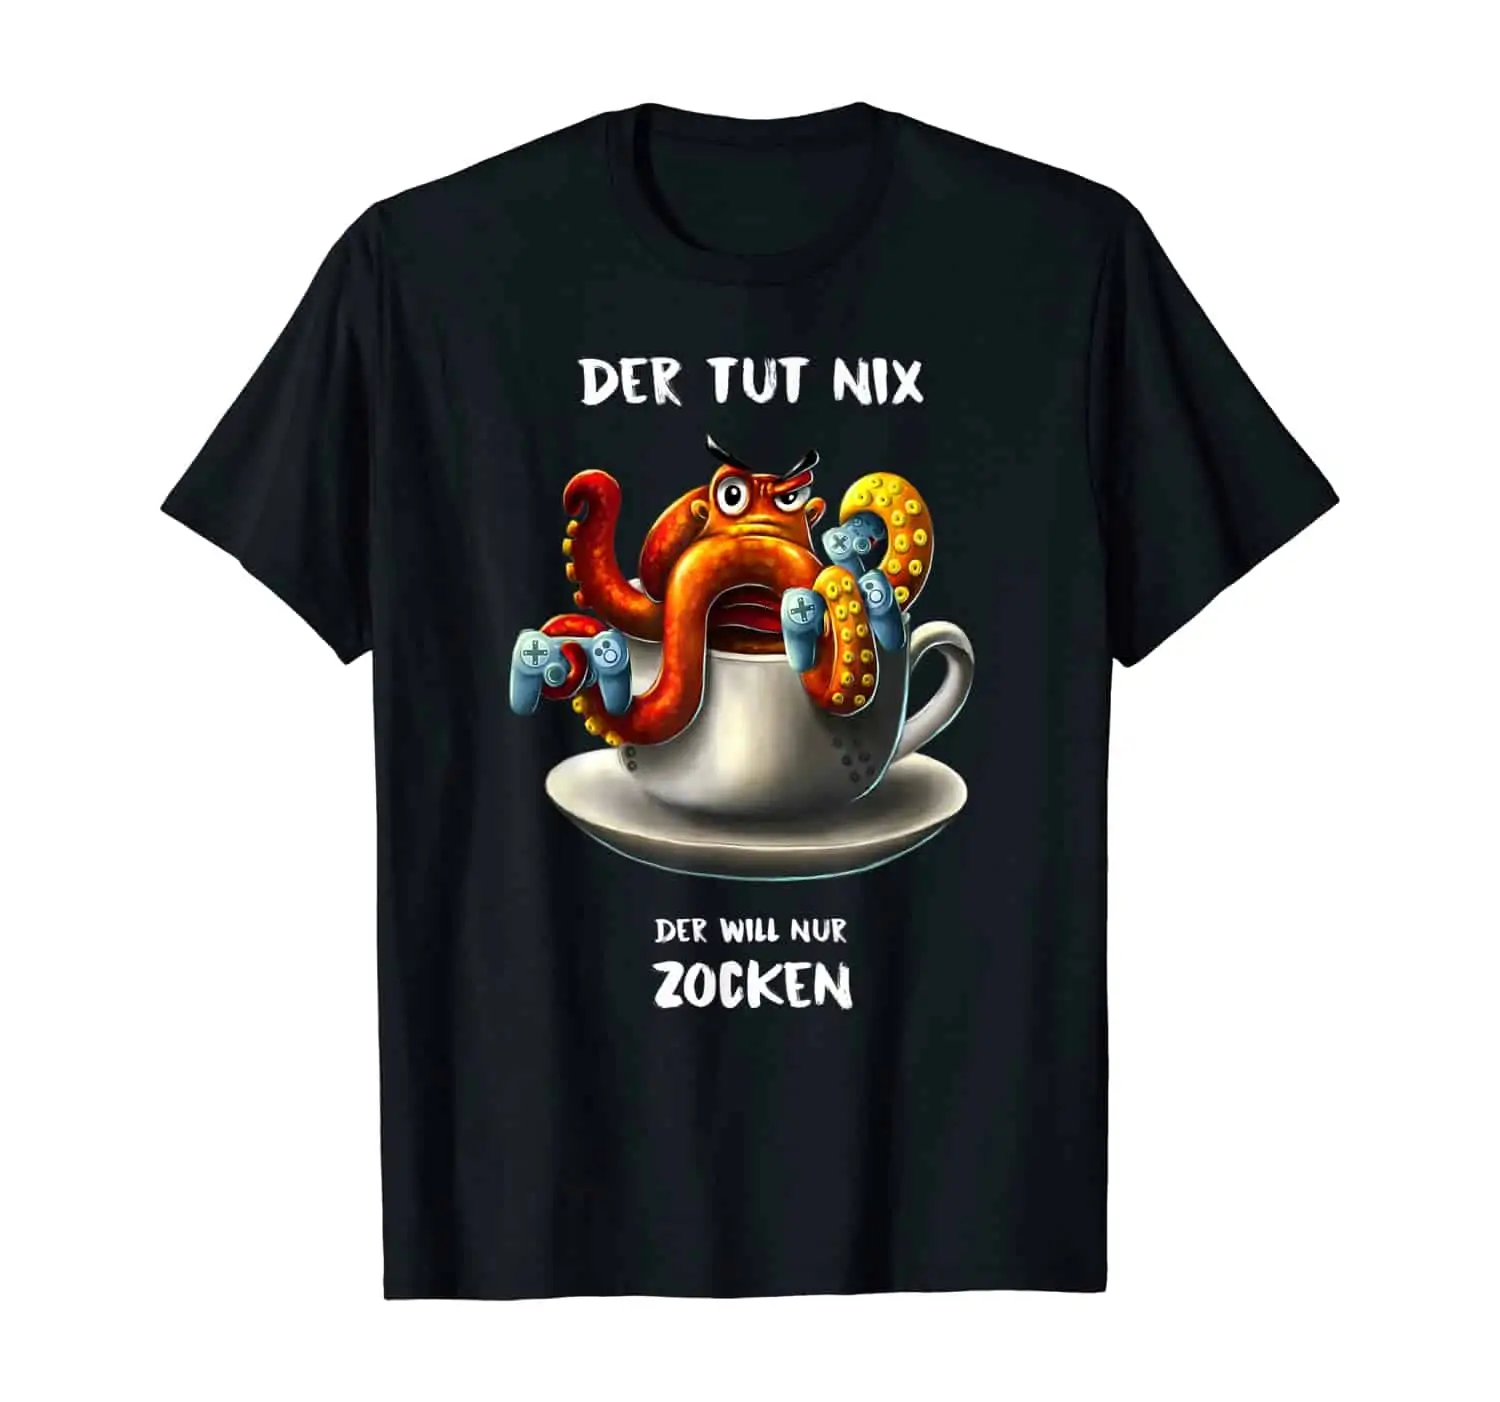 Oktopus Tintenfisch Kaffee Trinker, Kaffee Liebhaber, Morgenmuffel, Kaffeetrinker, Kaffee Spruch, Gamer Shirt, Zocker Shirt, Gaming Design, T-Shirt Design